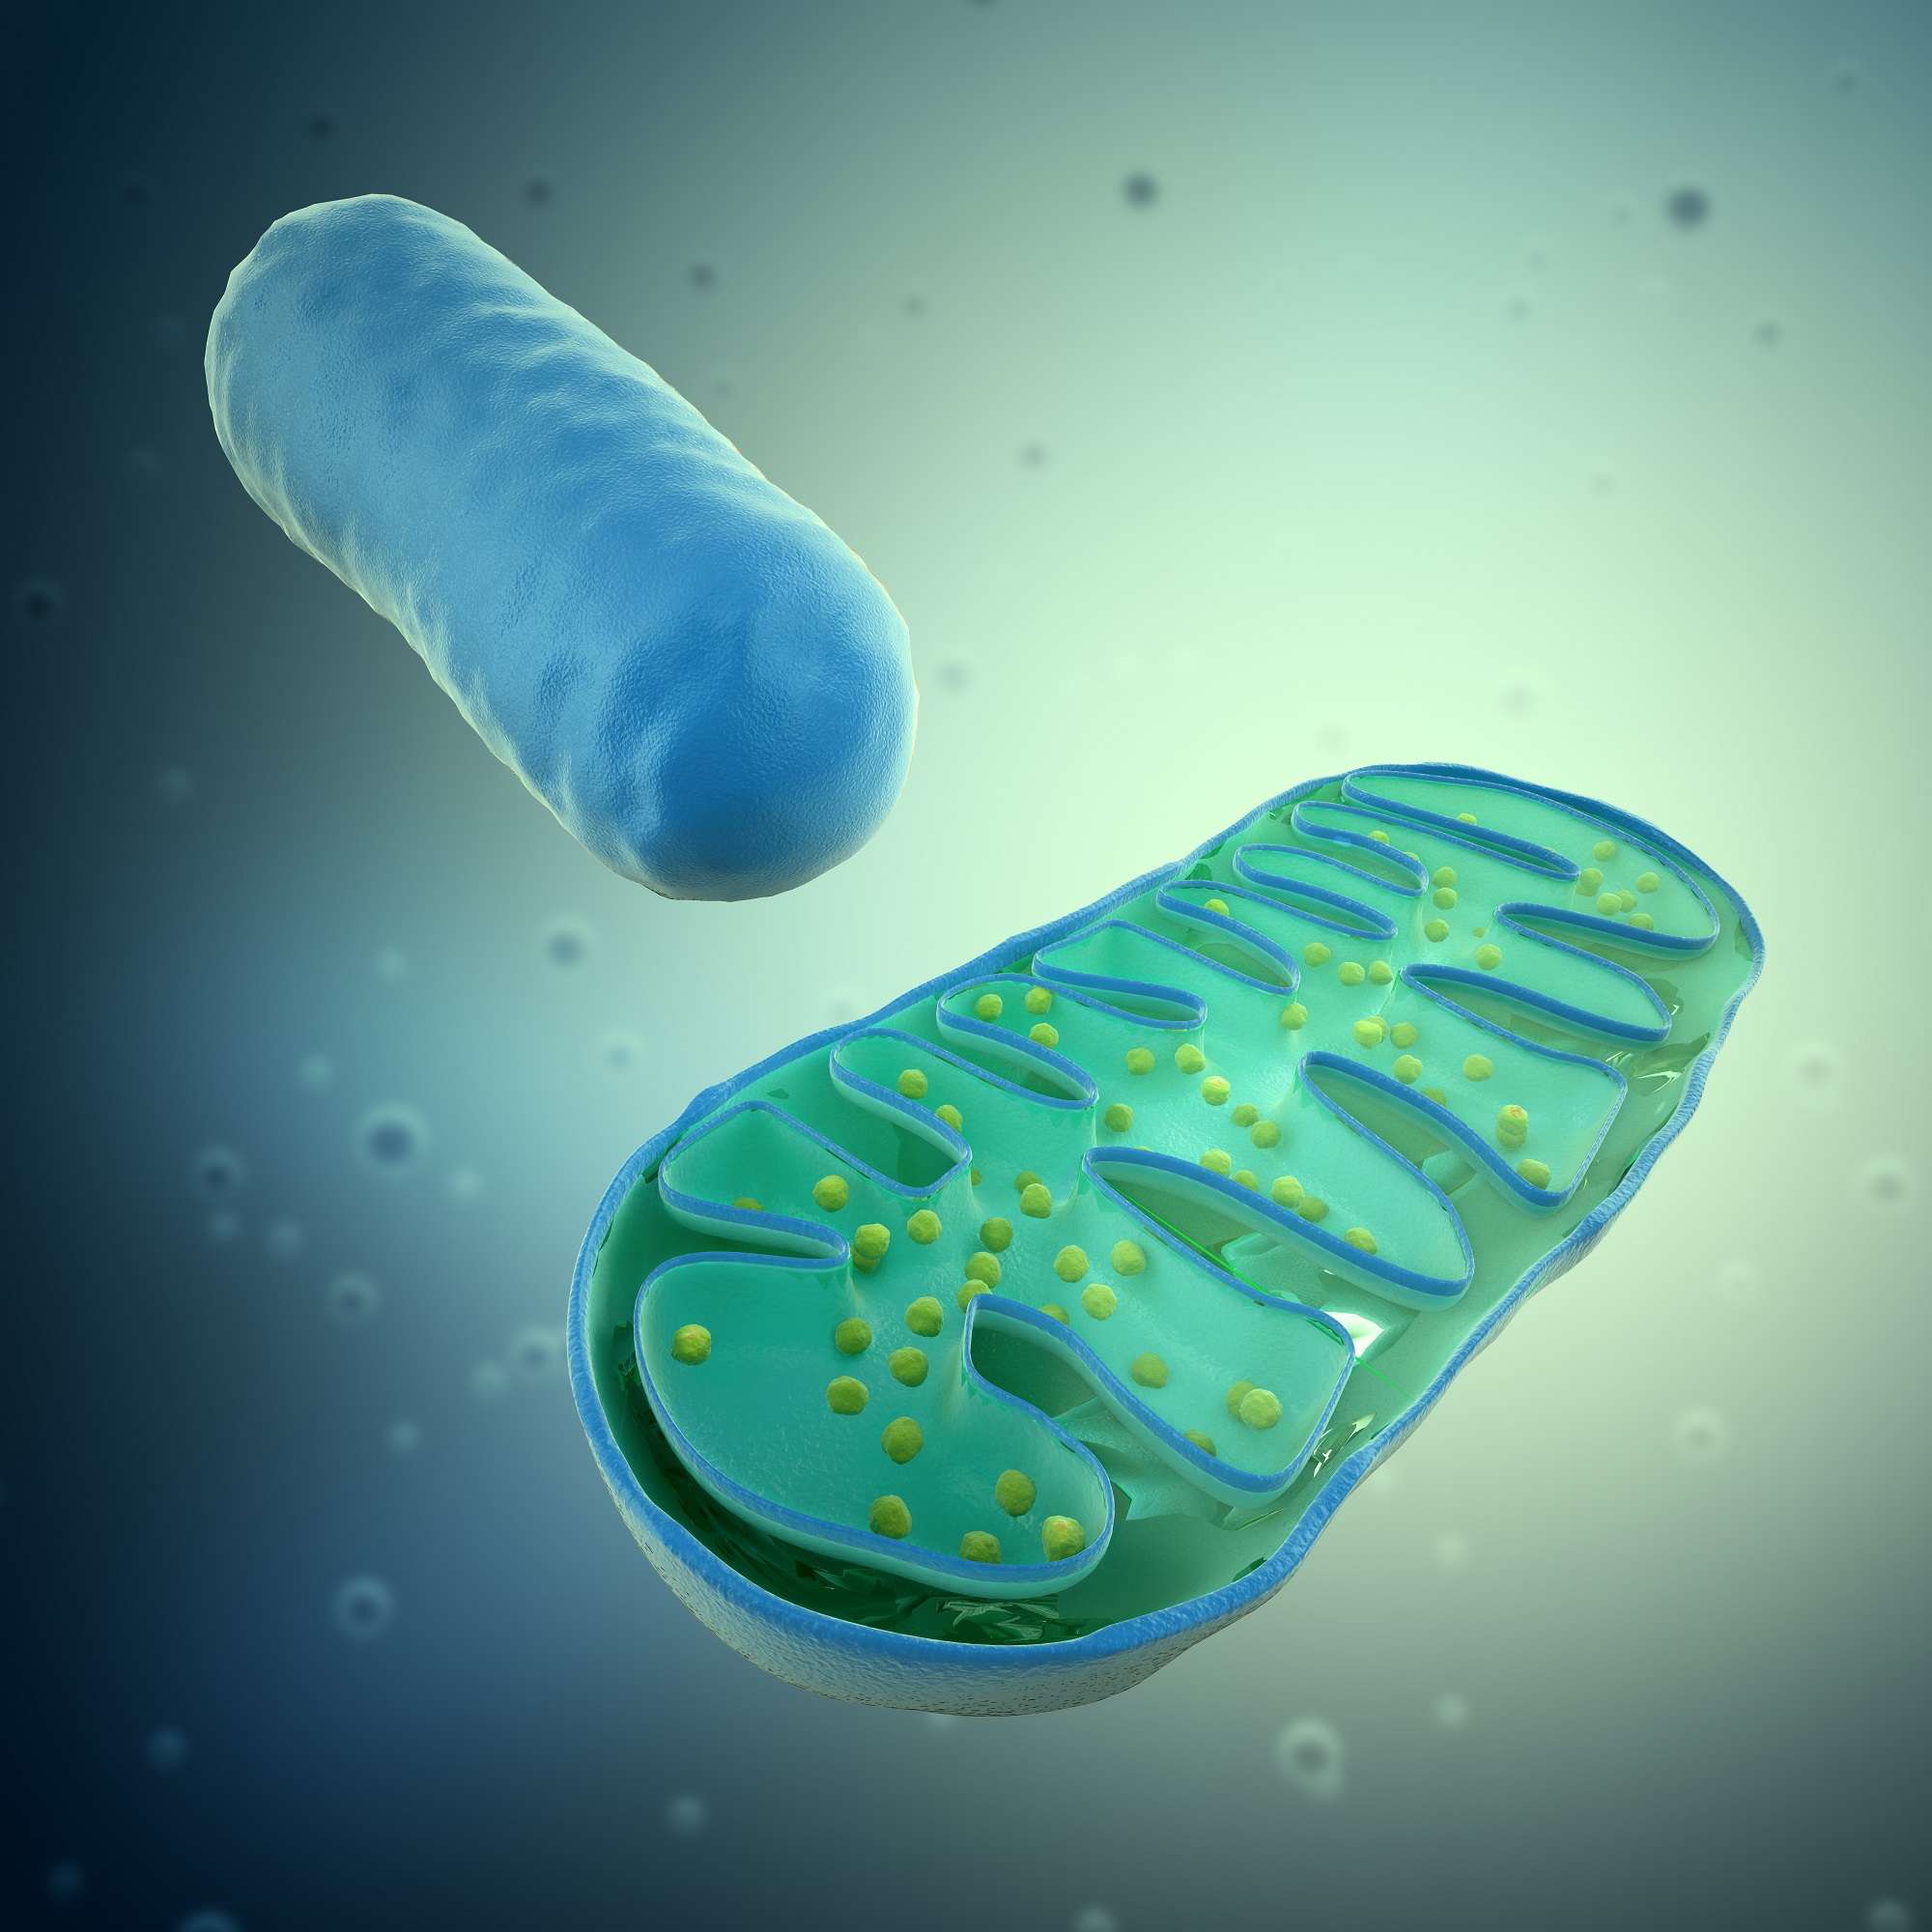 Resultado de imagen de mitocondria